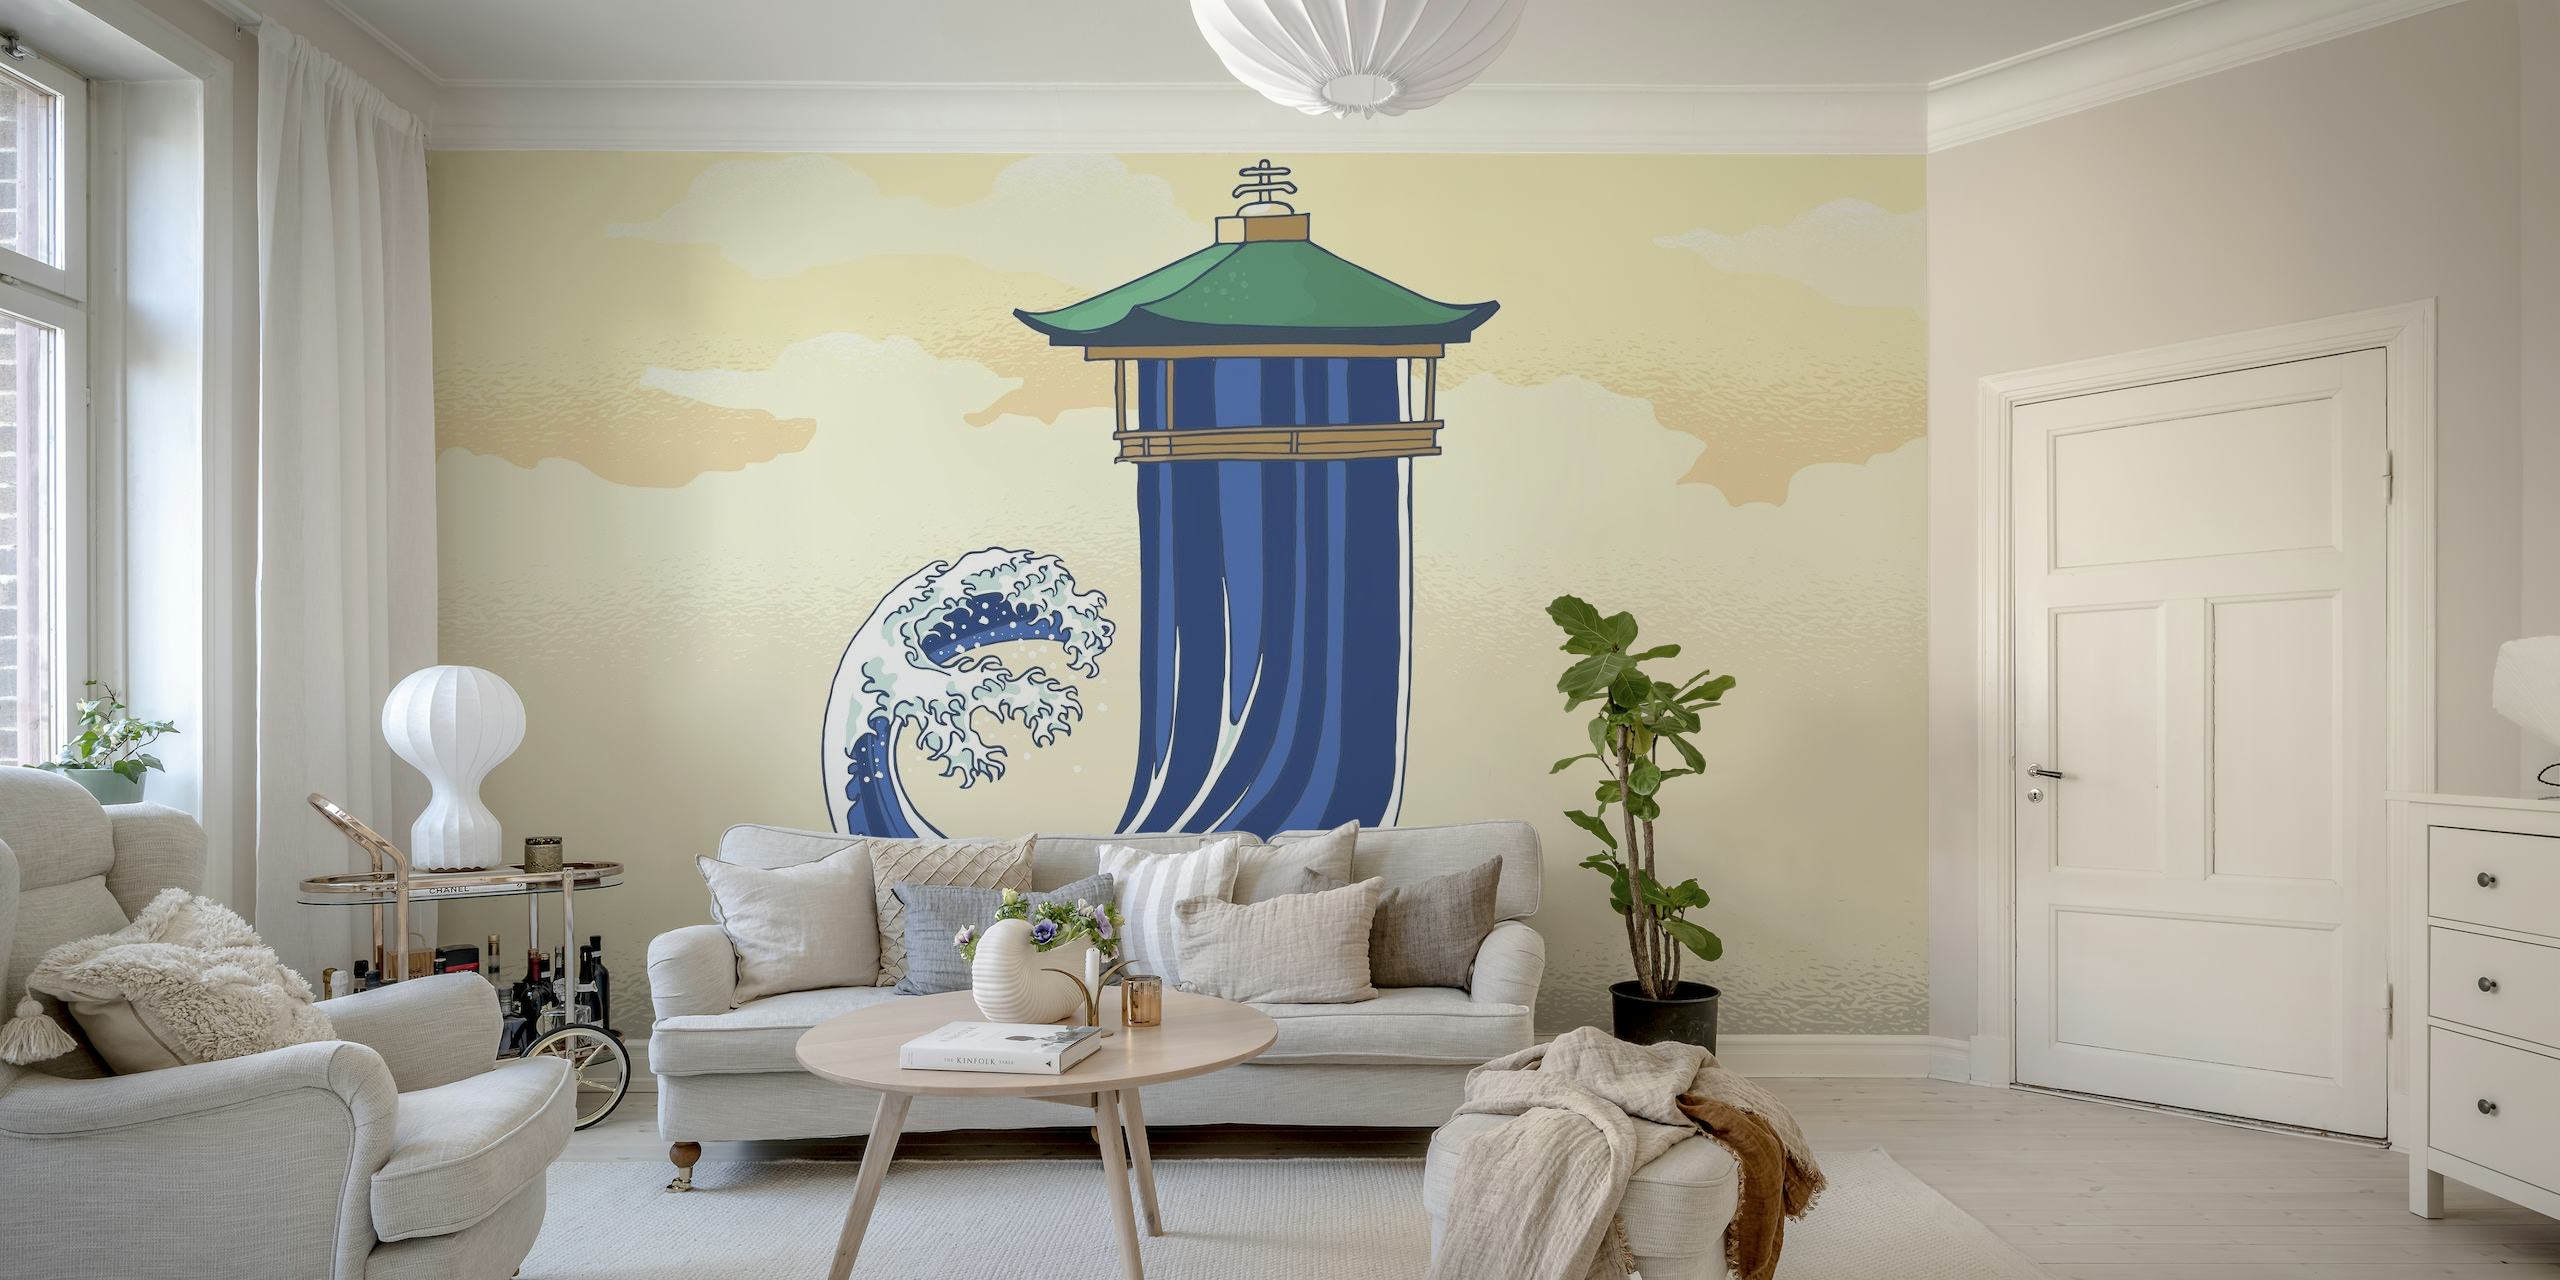 Stiliserad japansk pagod och havsvågmålning i pastellfärger